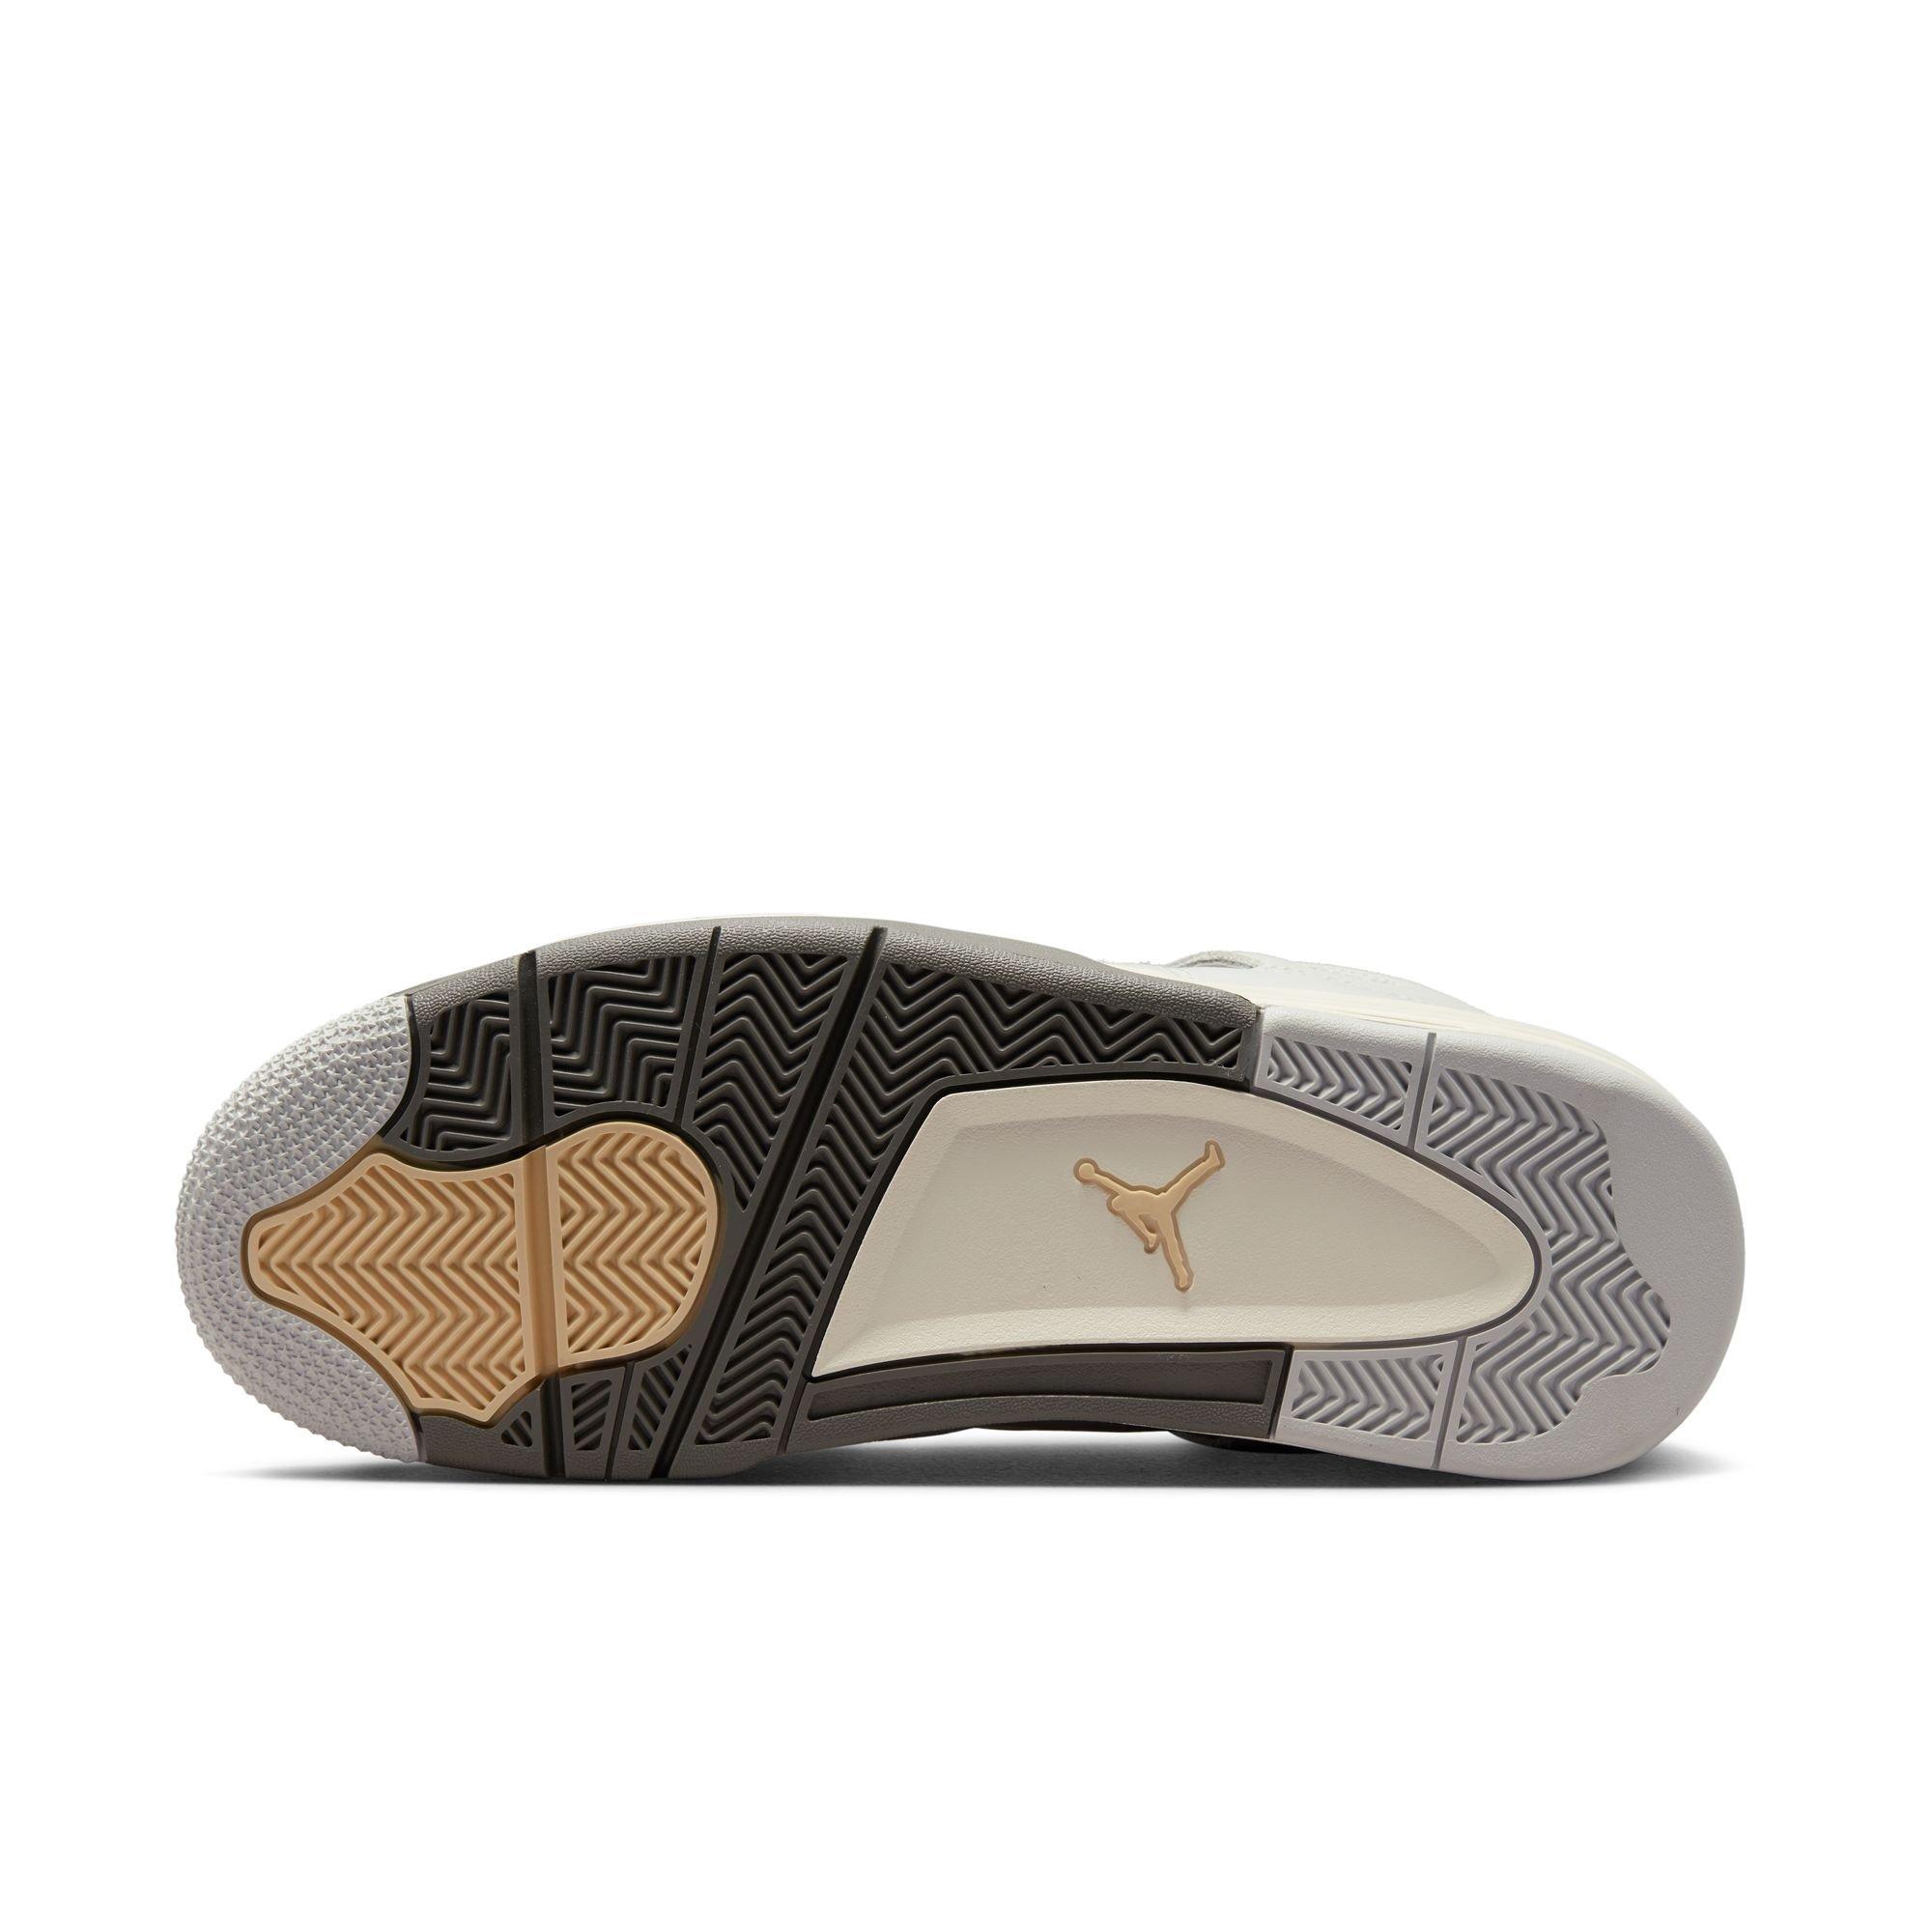 👁️ Sneaker Visionz 👁️ on X: Louis Vuitton x Air Jordan 4 Customs 🔥   / X